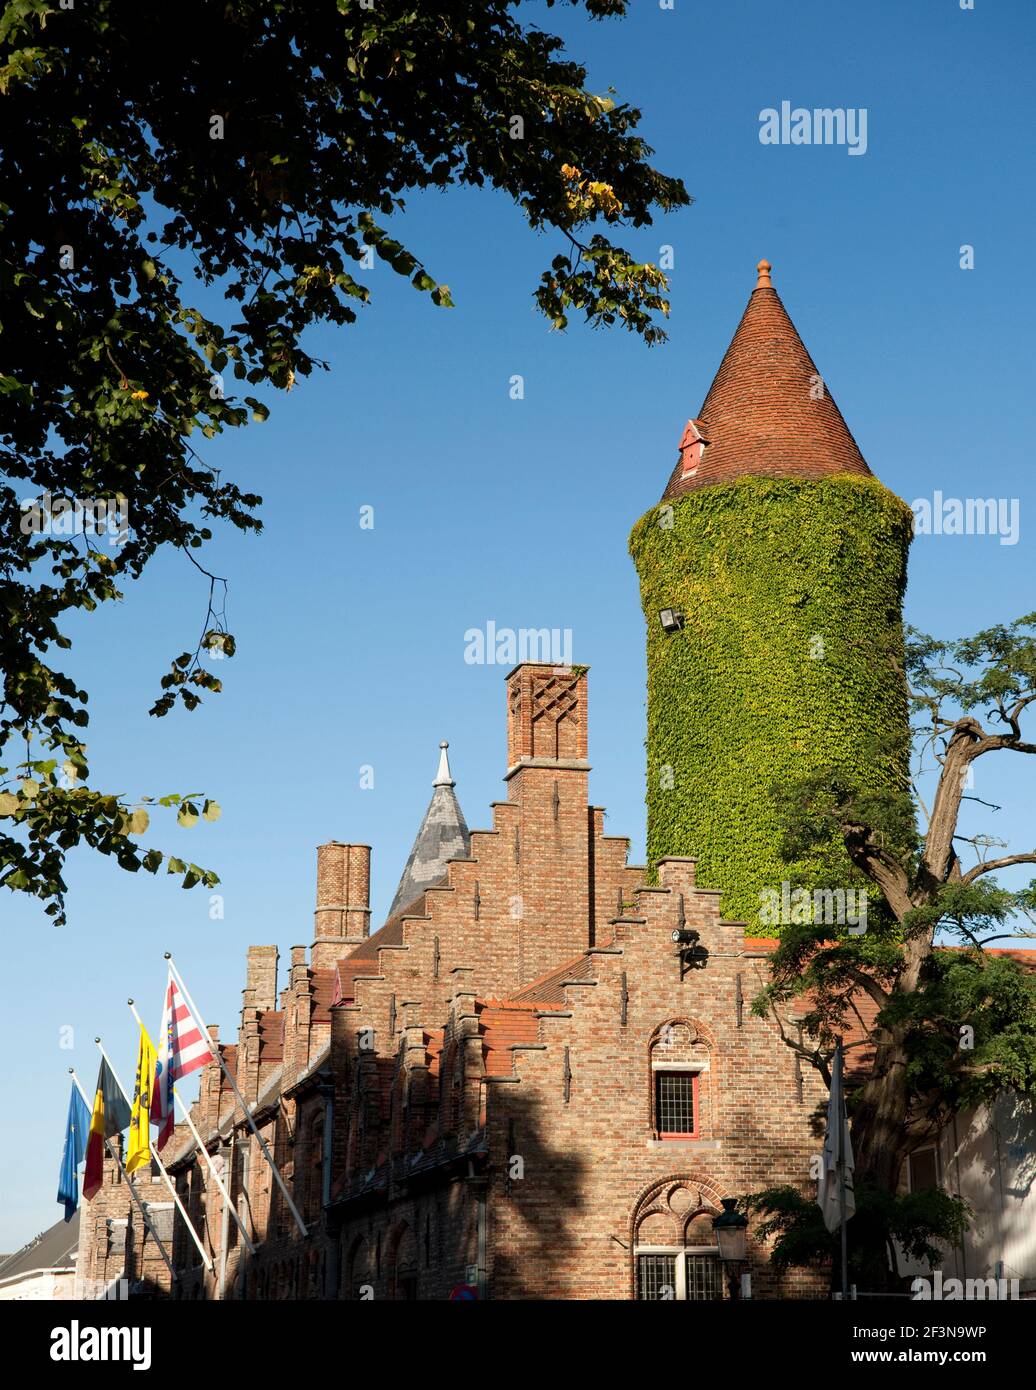 Le musée Gruuthuse, situé dans le centre de la vieille ville de Bruges, est célèbre pour sa tour revêtue de lierre et son architecture gothique saisissante. La maison Gruuthuse et Banque D'Images